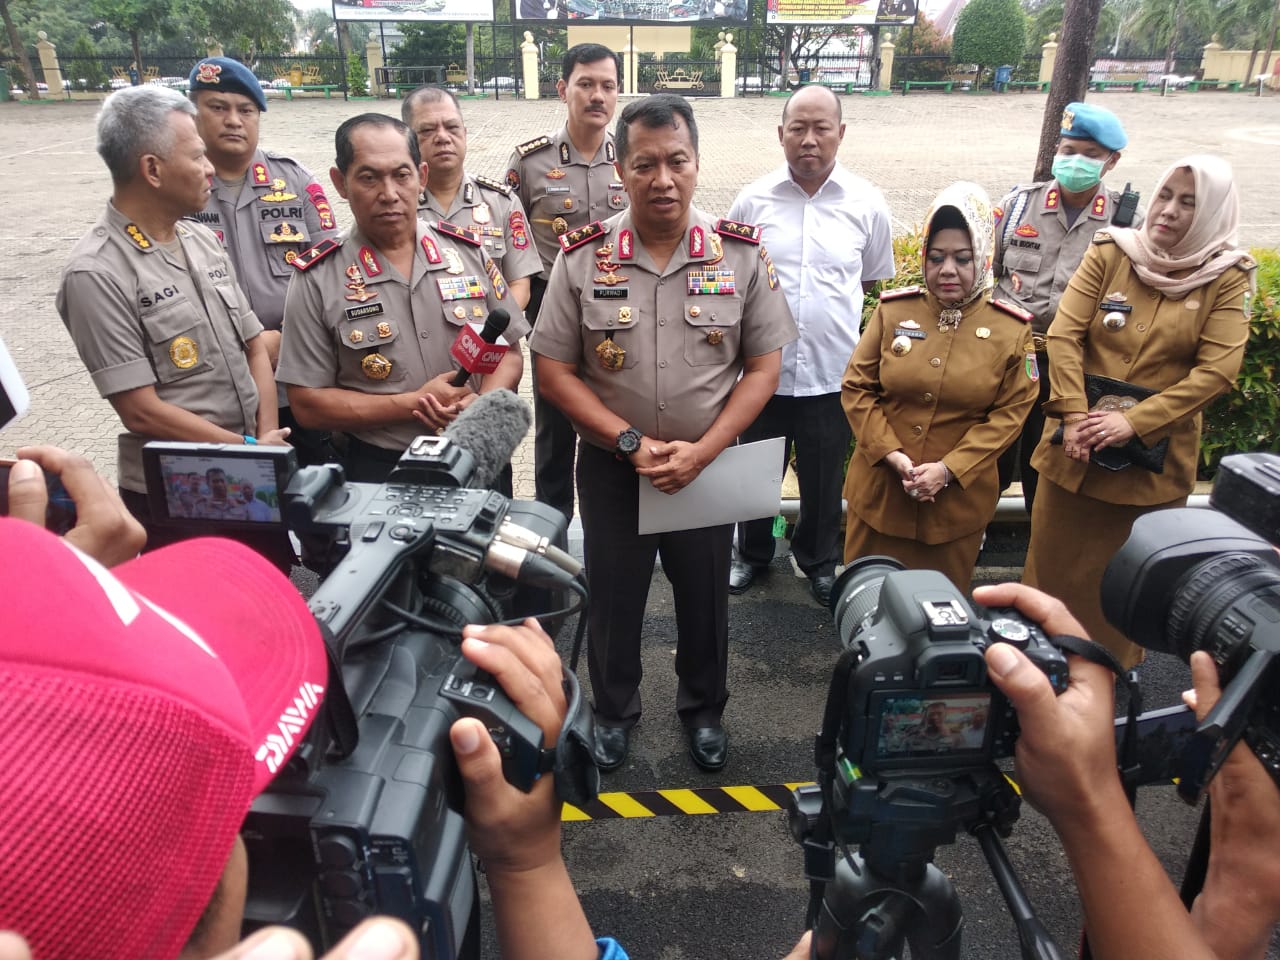 Kadiskes Lampung Sebut Kondisi Pasien 01 Stabil